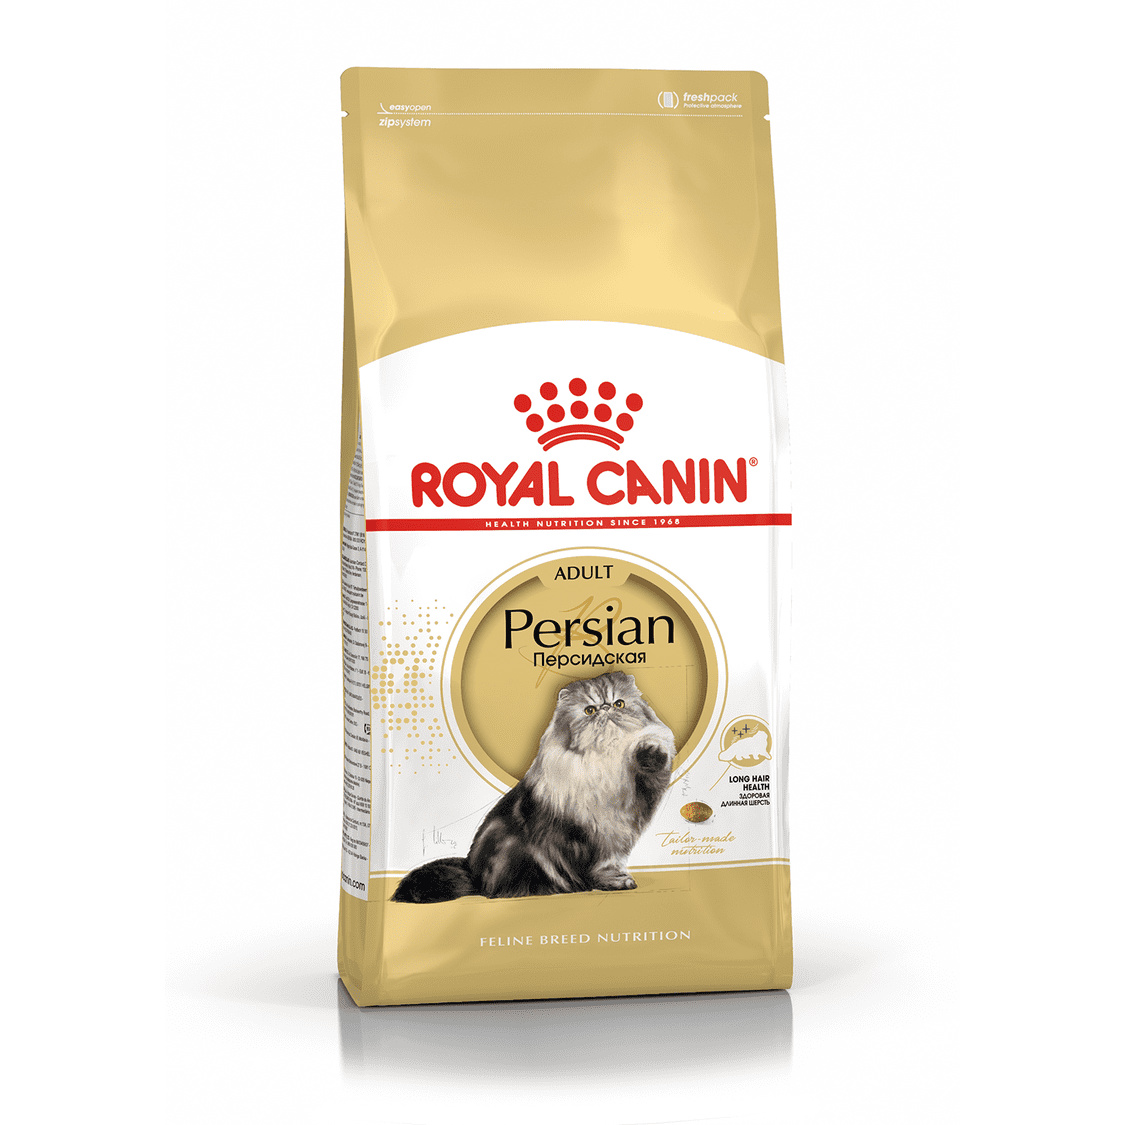 Royal Canin Royal Canin для персидских кошек 1-10 лет (2 кг)